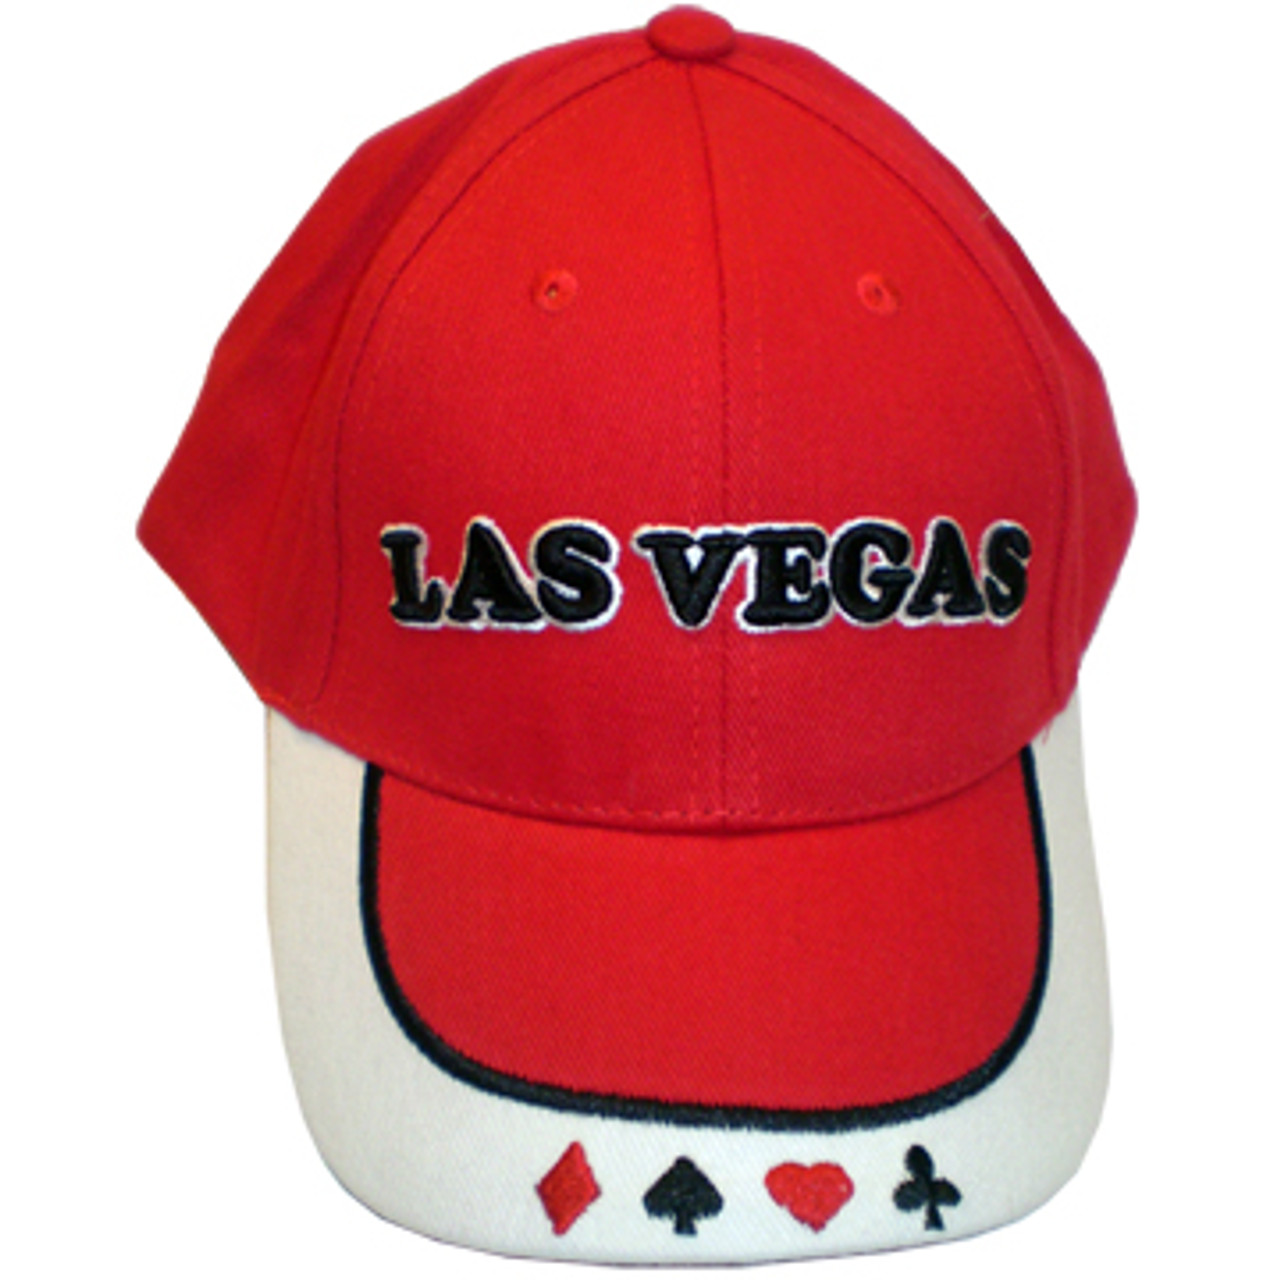 Las Vegas Souvenir Cap in Red- Las Vegas Gift Shop Souvenir Hats online